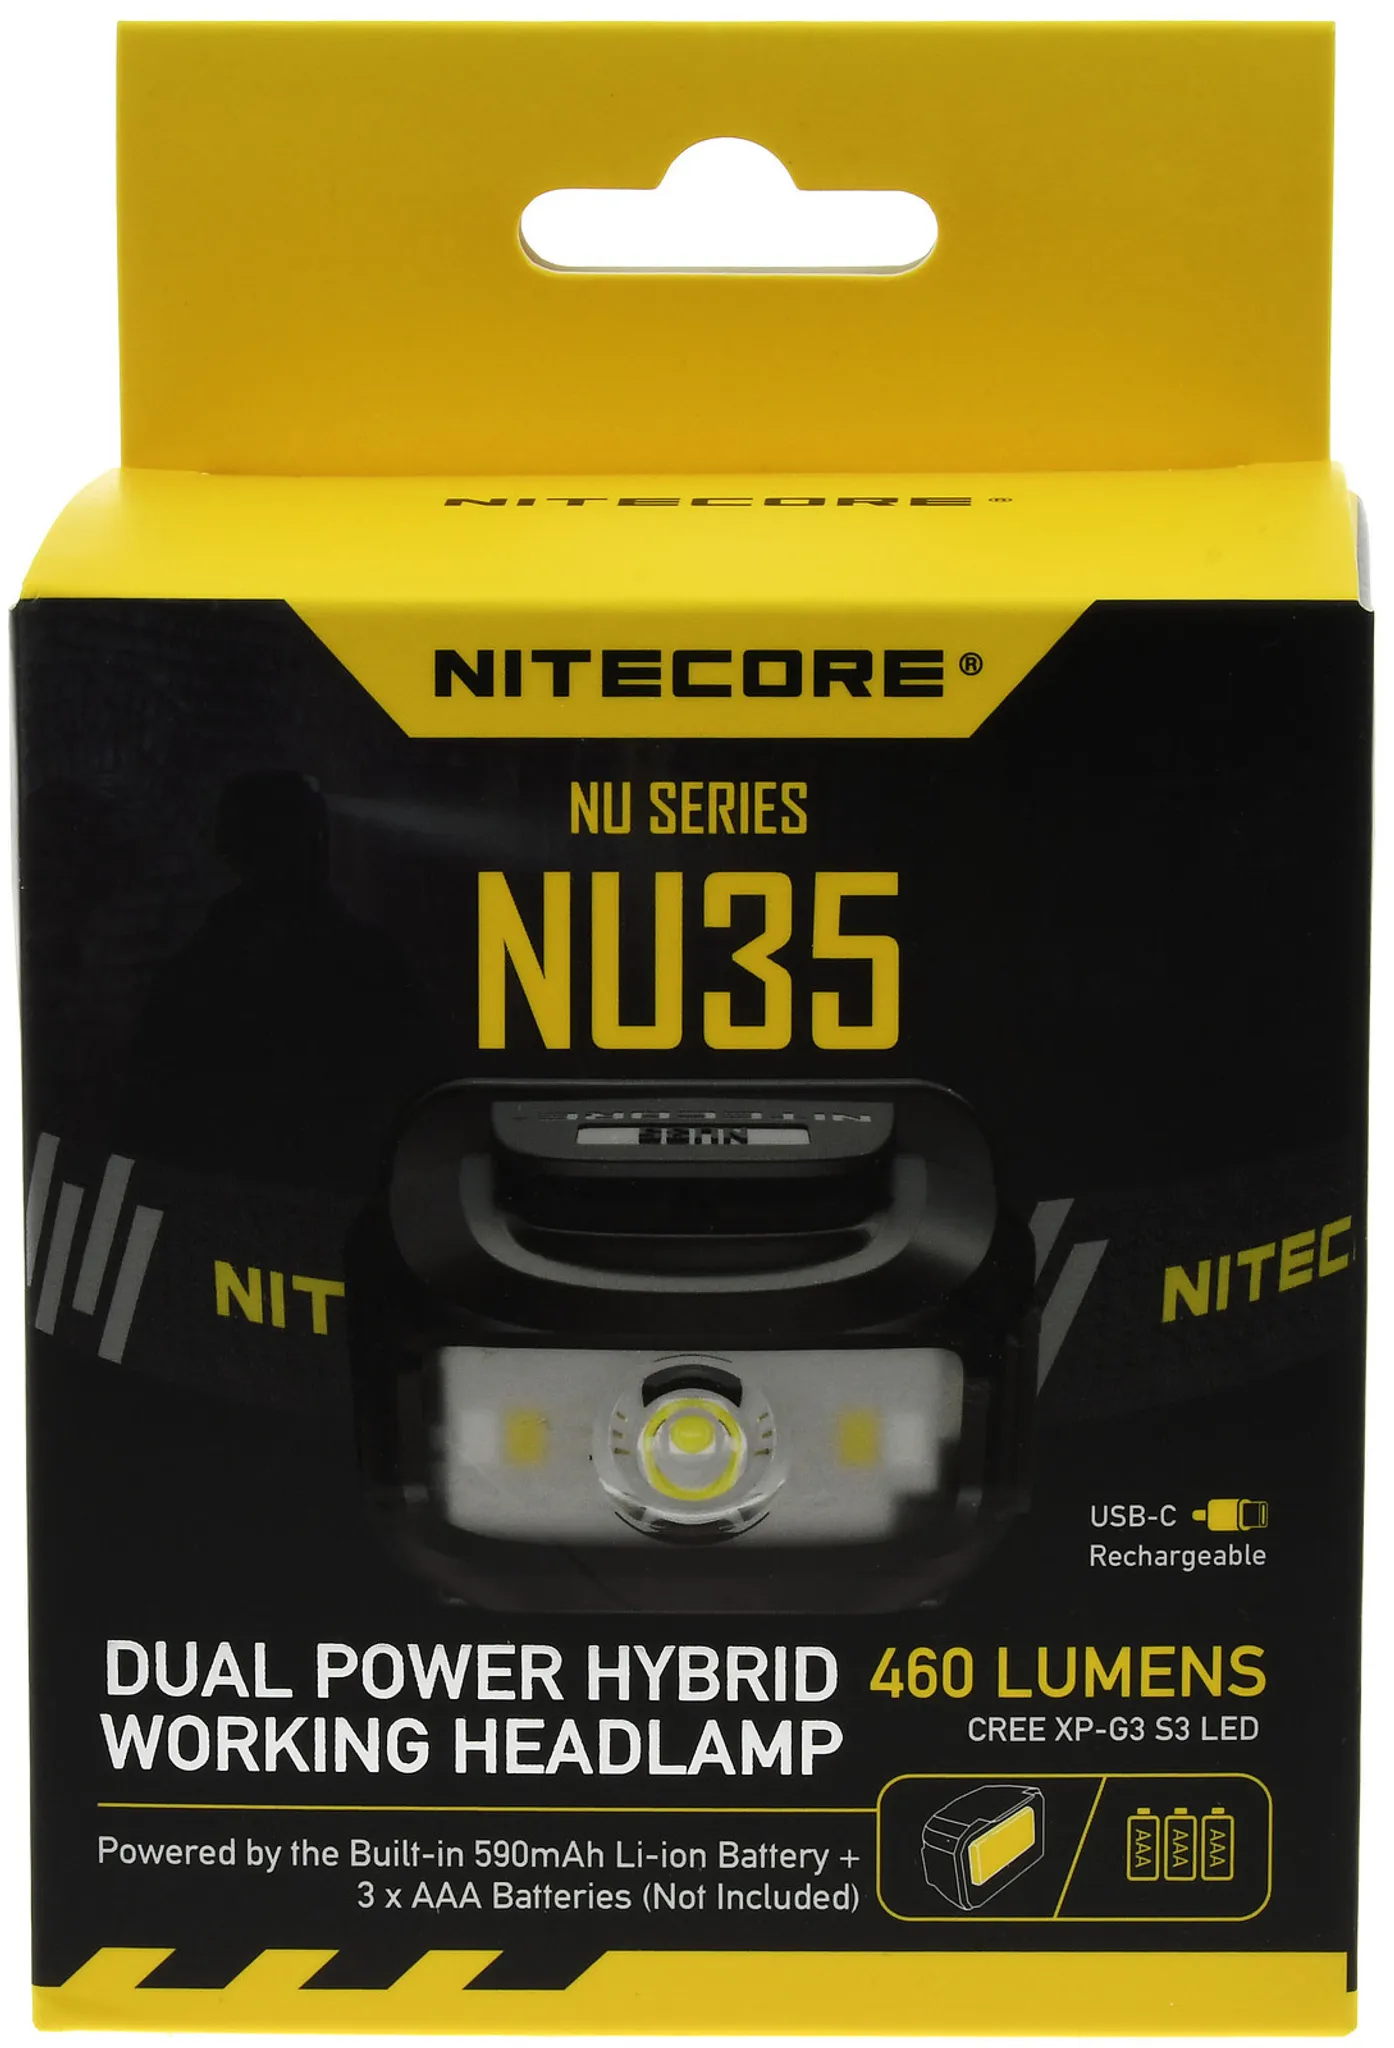 Nitecore NU35 LED Stirnlampe 460 Lumen